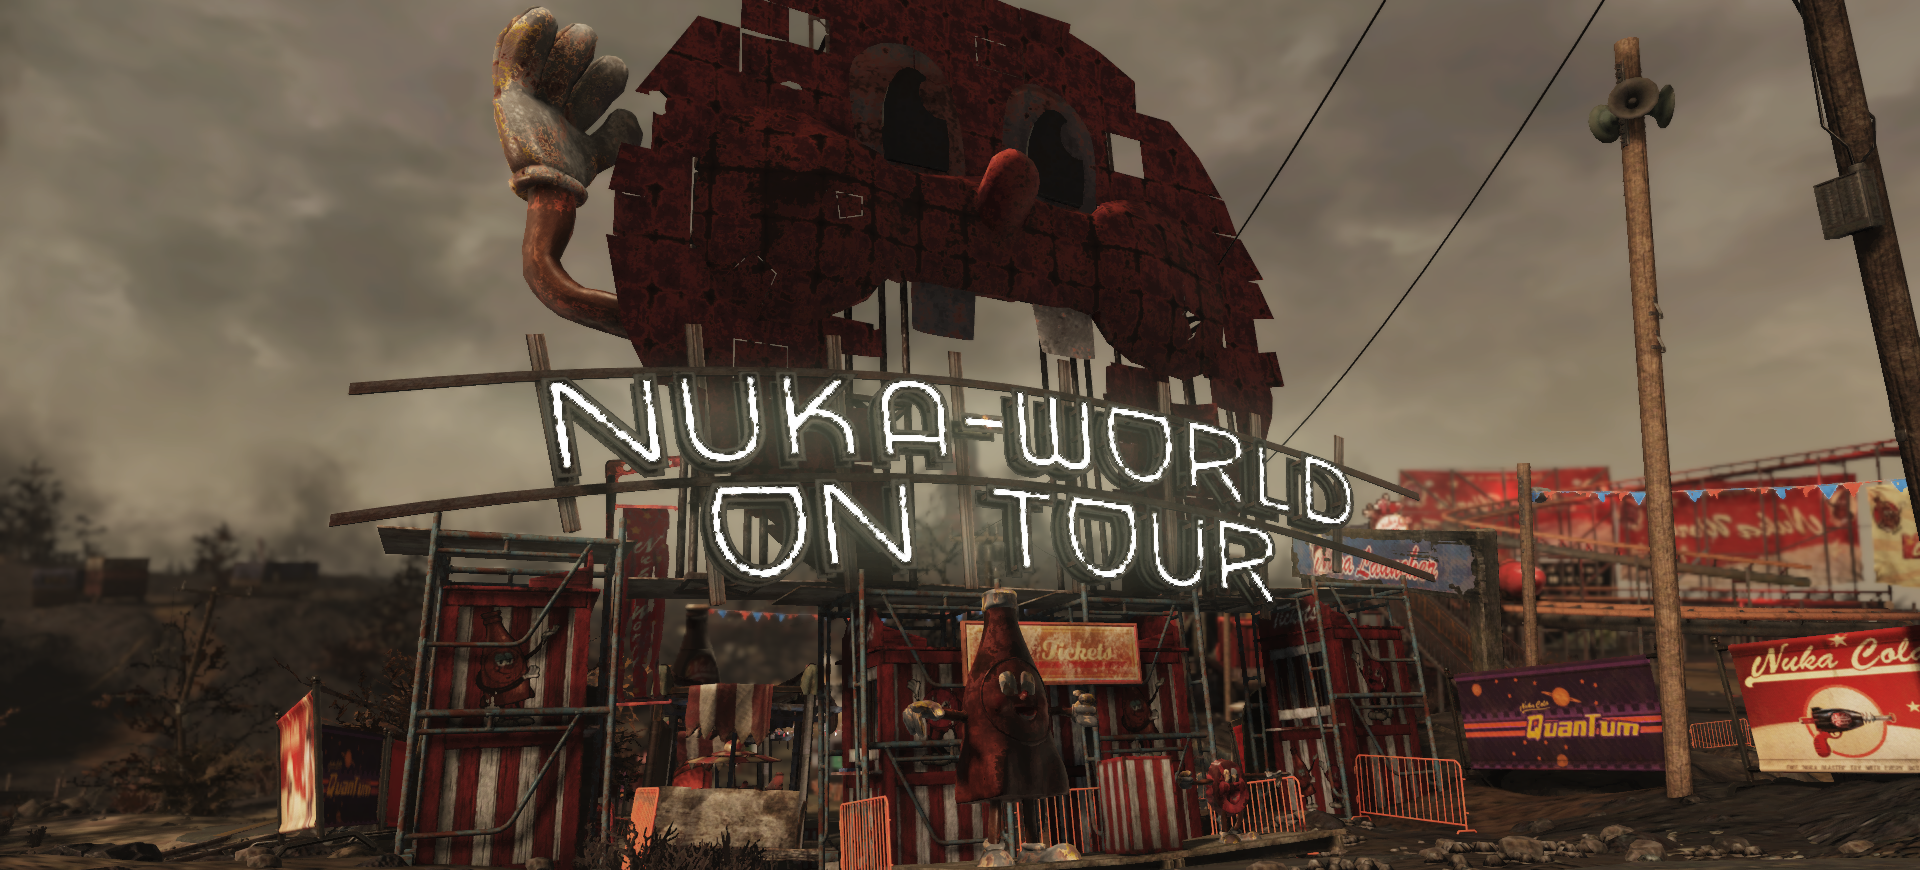 Fallout 4 nuka world убить всех рейдеров фото 54